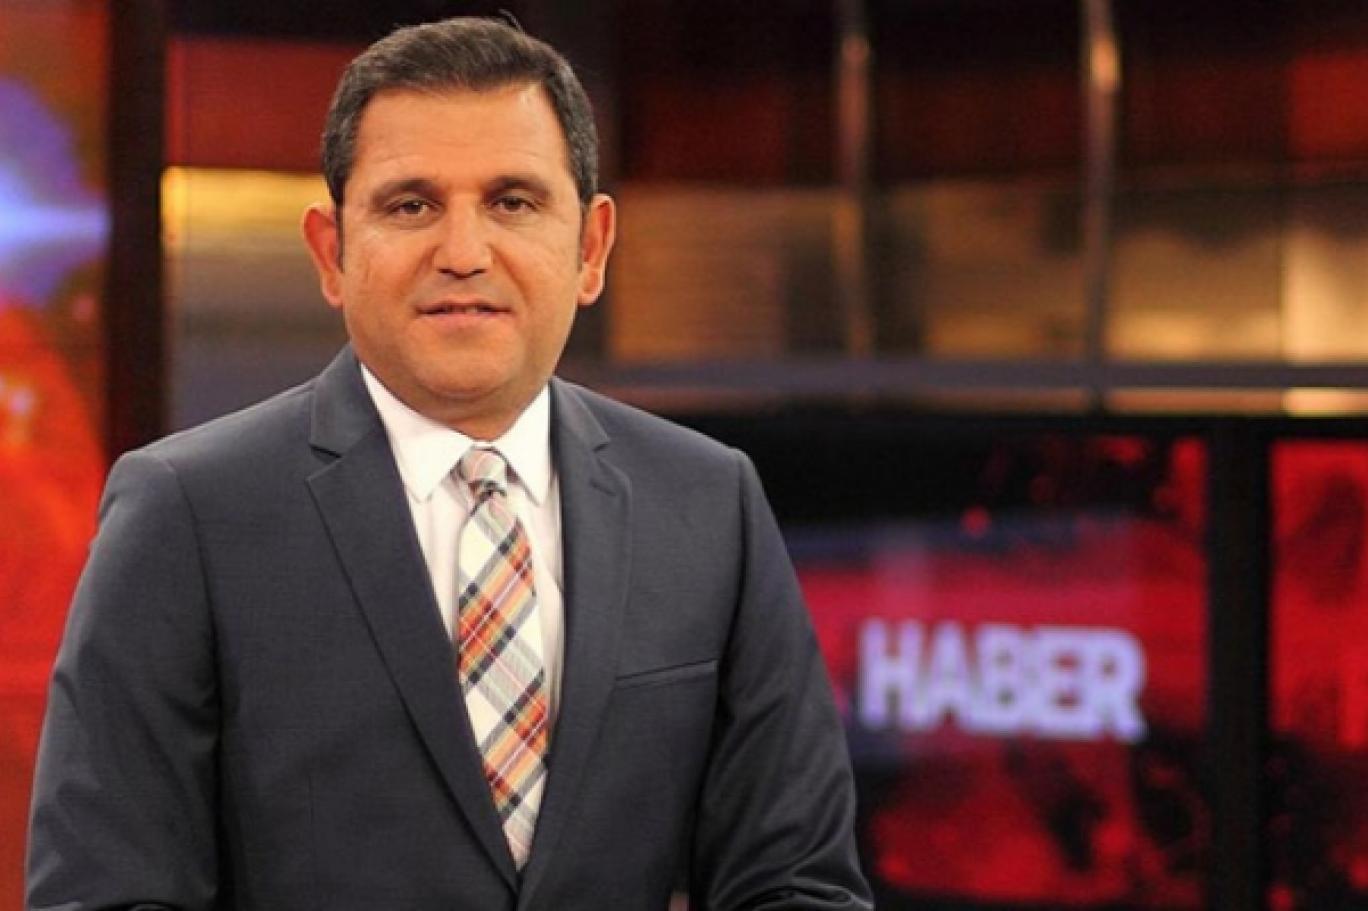 FOX Haber Genel Yayın Yönetmeni Şentürk: Fatih Portakal'ın istifasını gereksiz buluyorum, ikna için çok uğraştım | Independent Türkçe